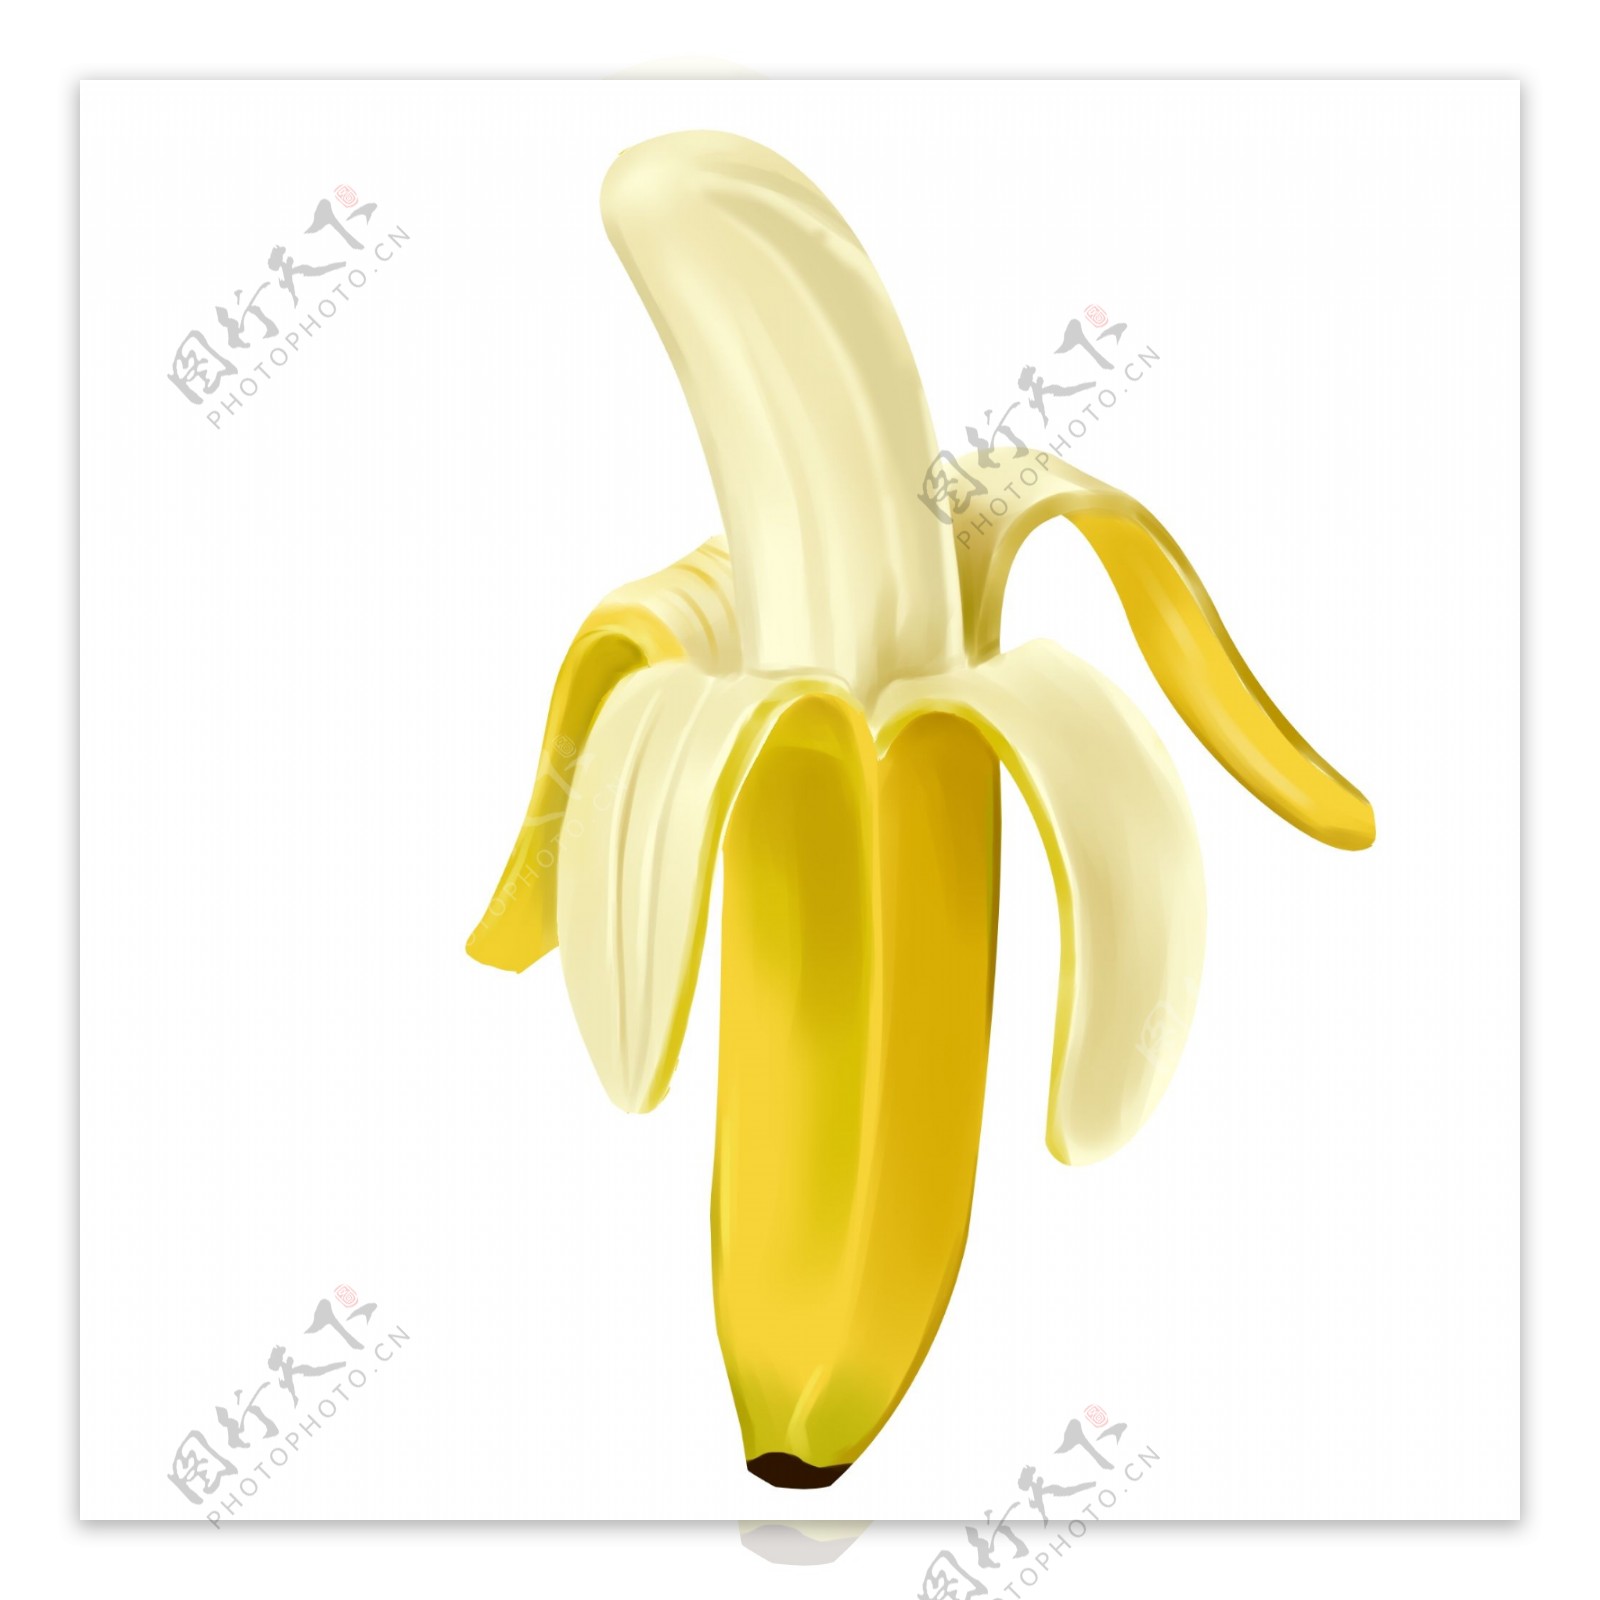 一根剥开的香蕉插图